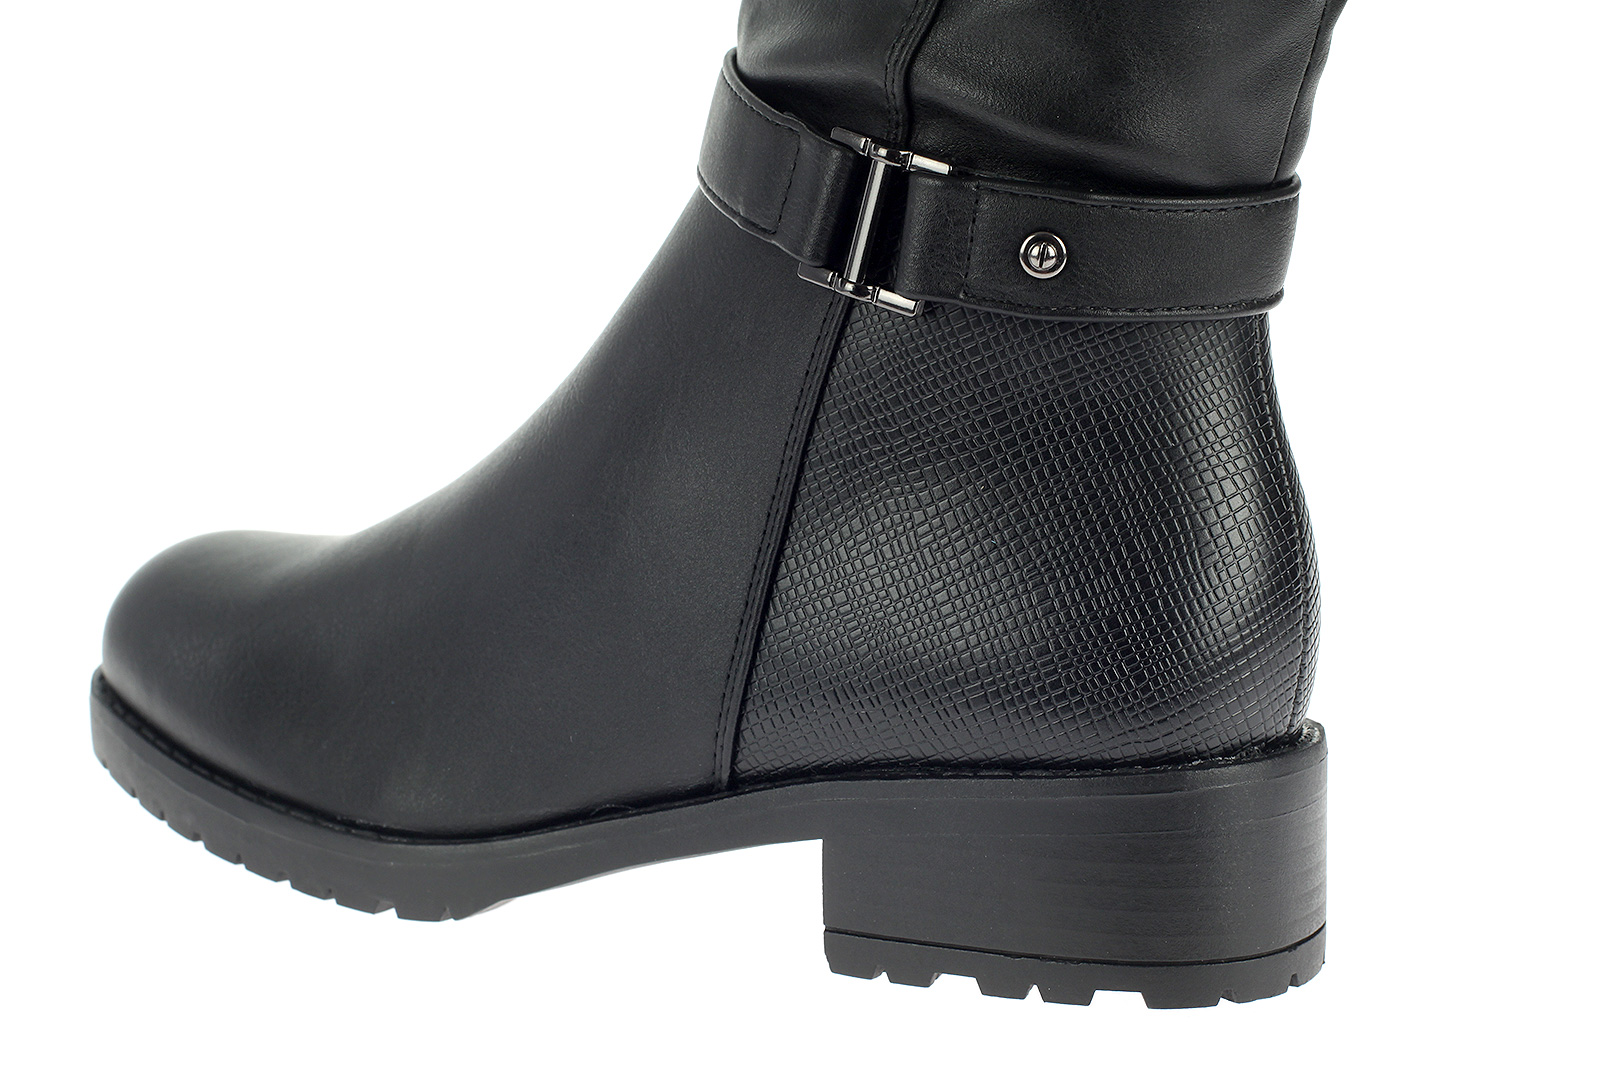 Damen Stiefel Winterstiefel Boot Warm Gefüttert Leder-Optik Schuhe Schwarz X9813-black